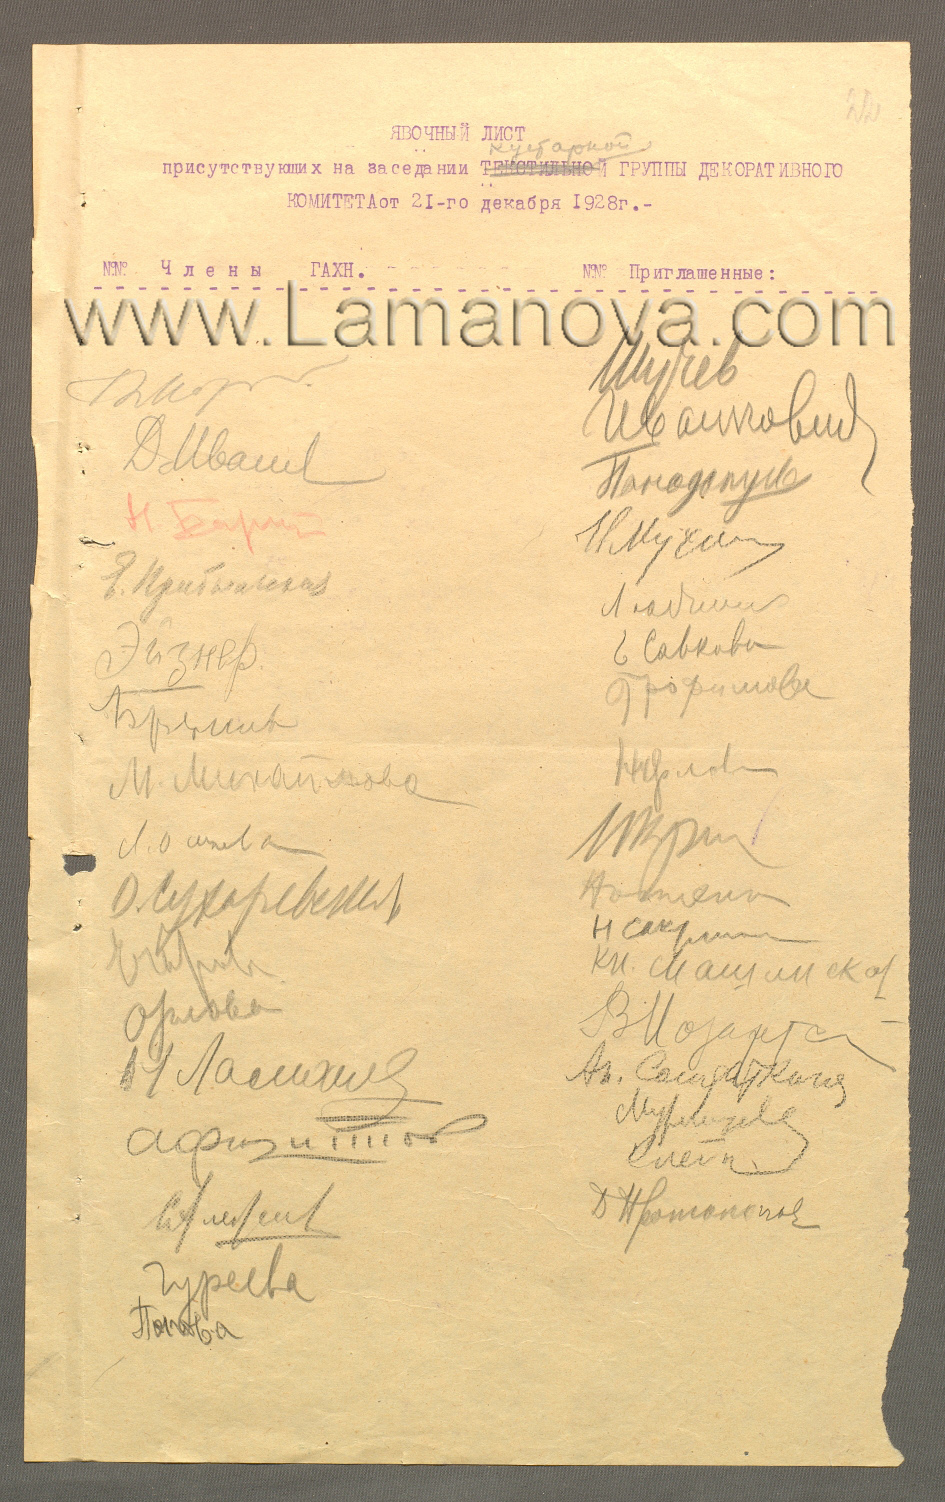 Явочный лист кустарной группы декоративного комитета ГАХН от 21 декабря 1928 года